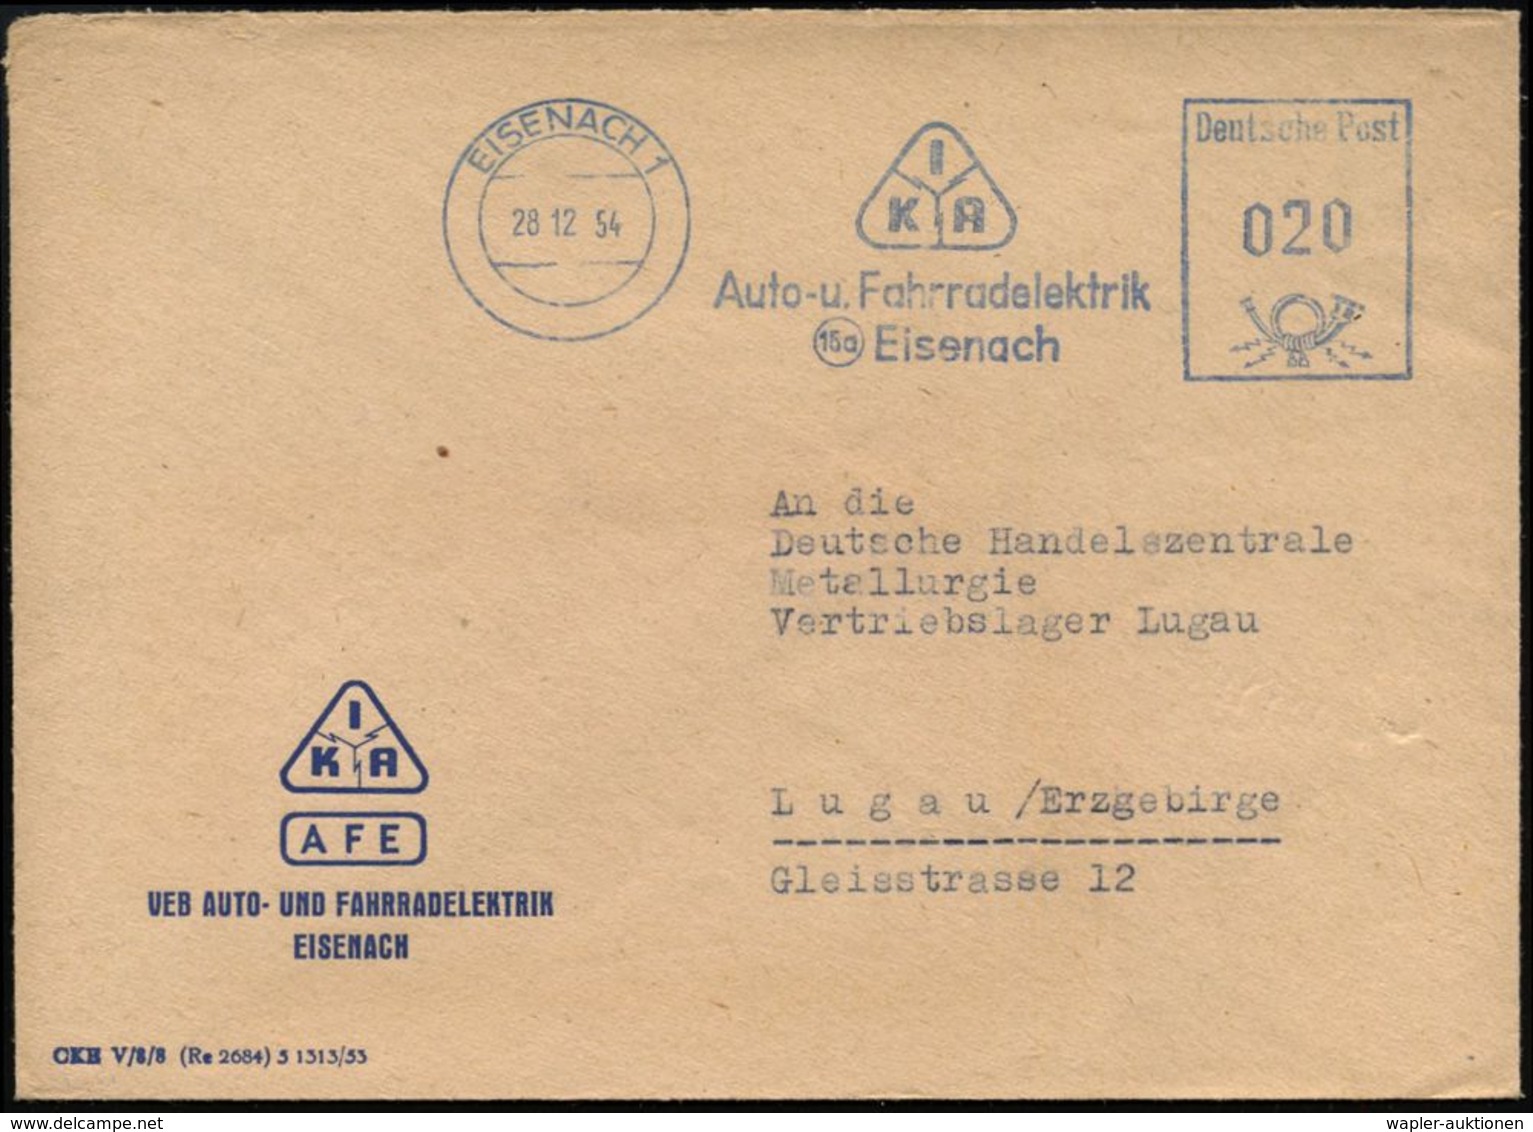 EISENACH 1/ IKA/ Auto-u.Fahrradelektrik/ (15a) Eisenach 1954 (28.12.) Blauer AFS = DDR-Dienstfarbe (Monogr.-Logo) Motivg - Autres (Terre)